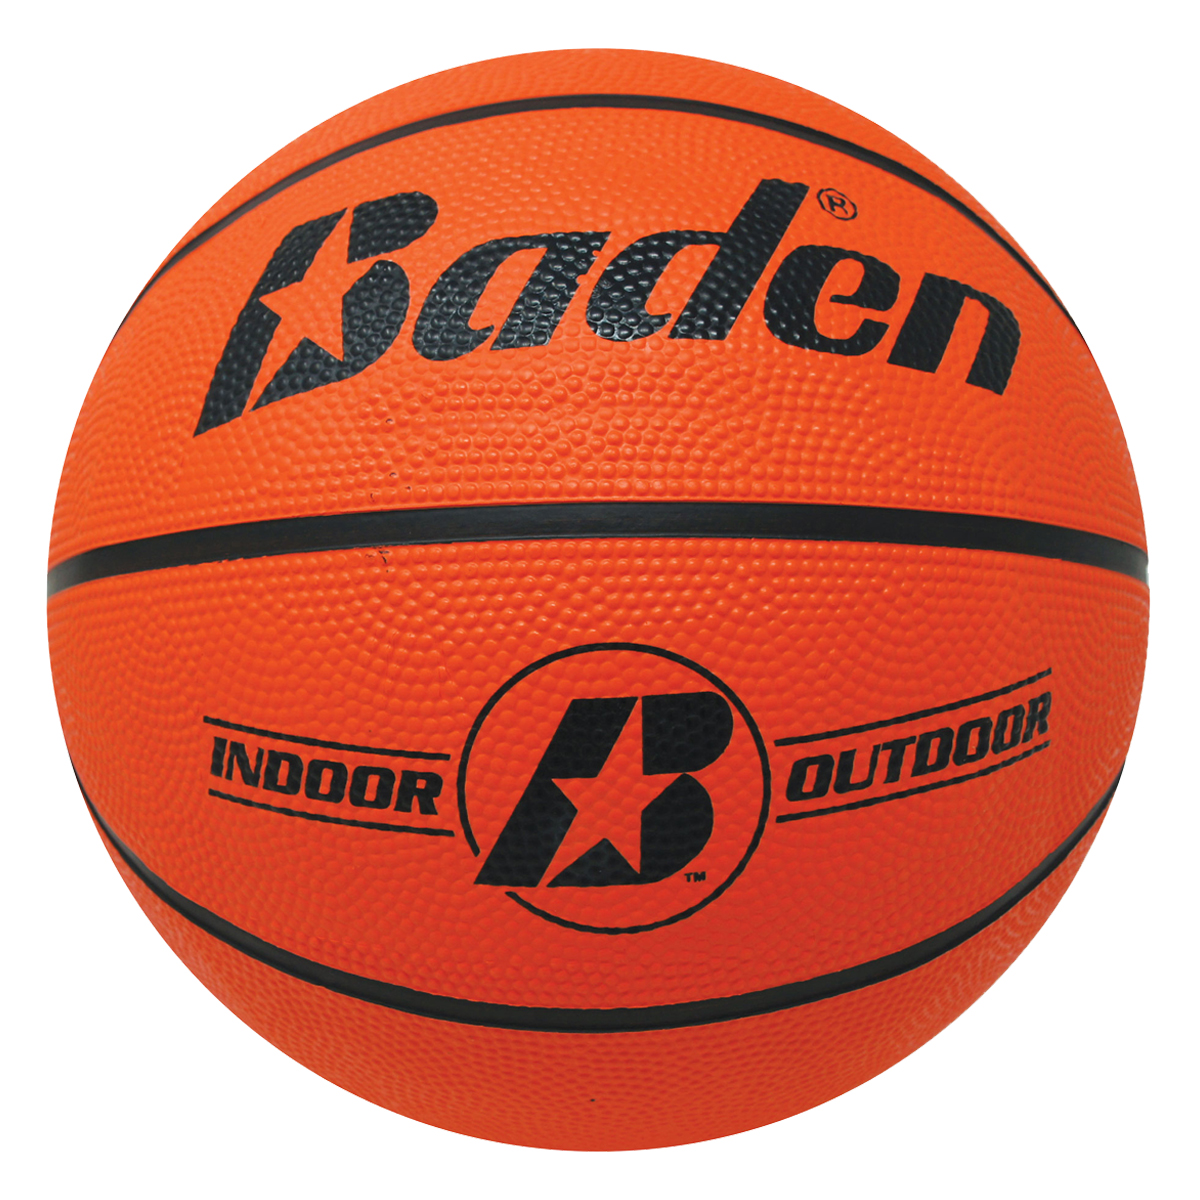 Baden BR7 Official Basketball